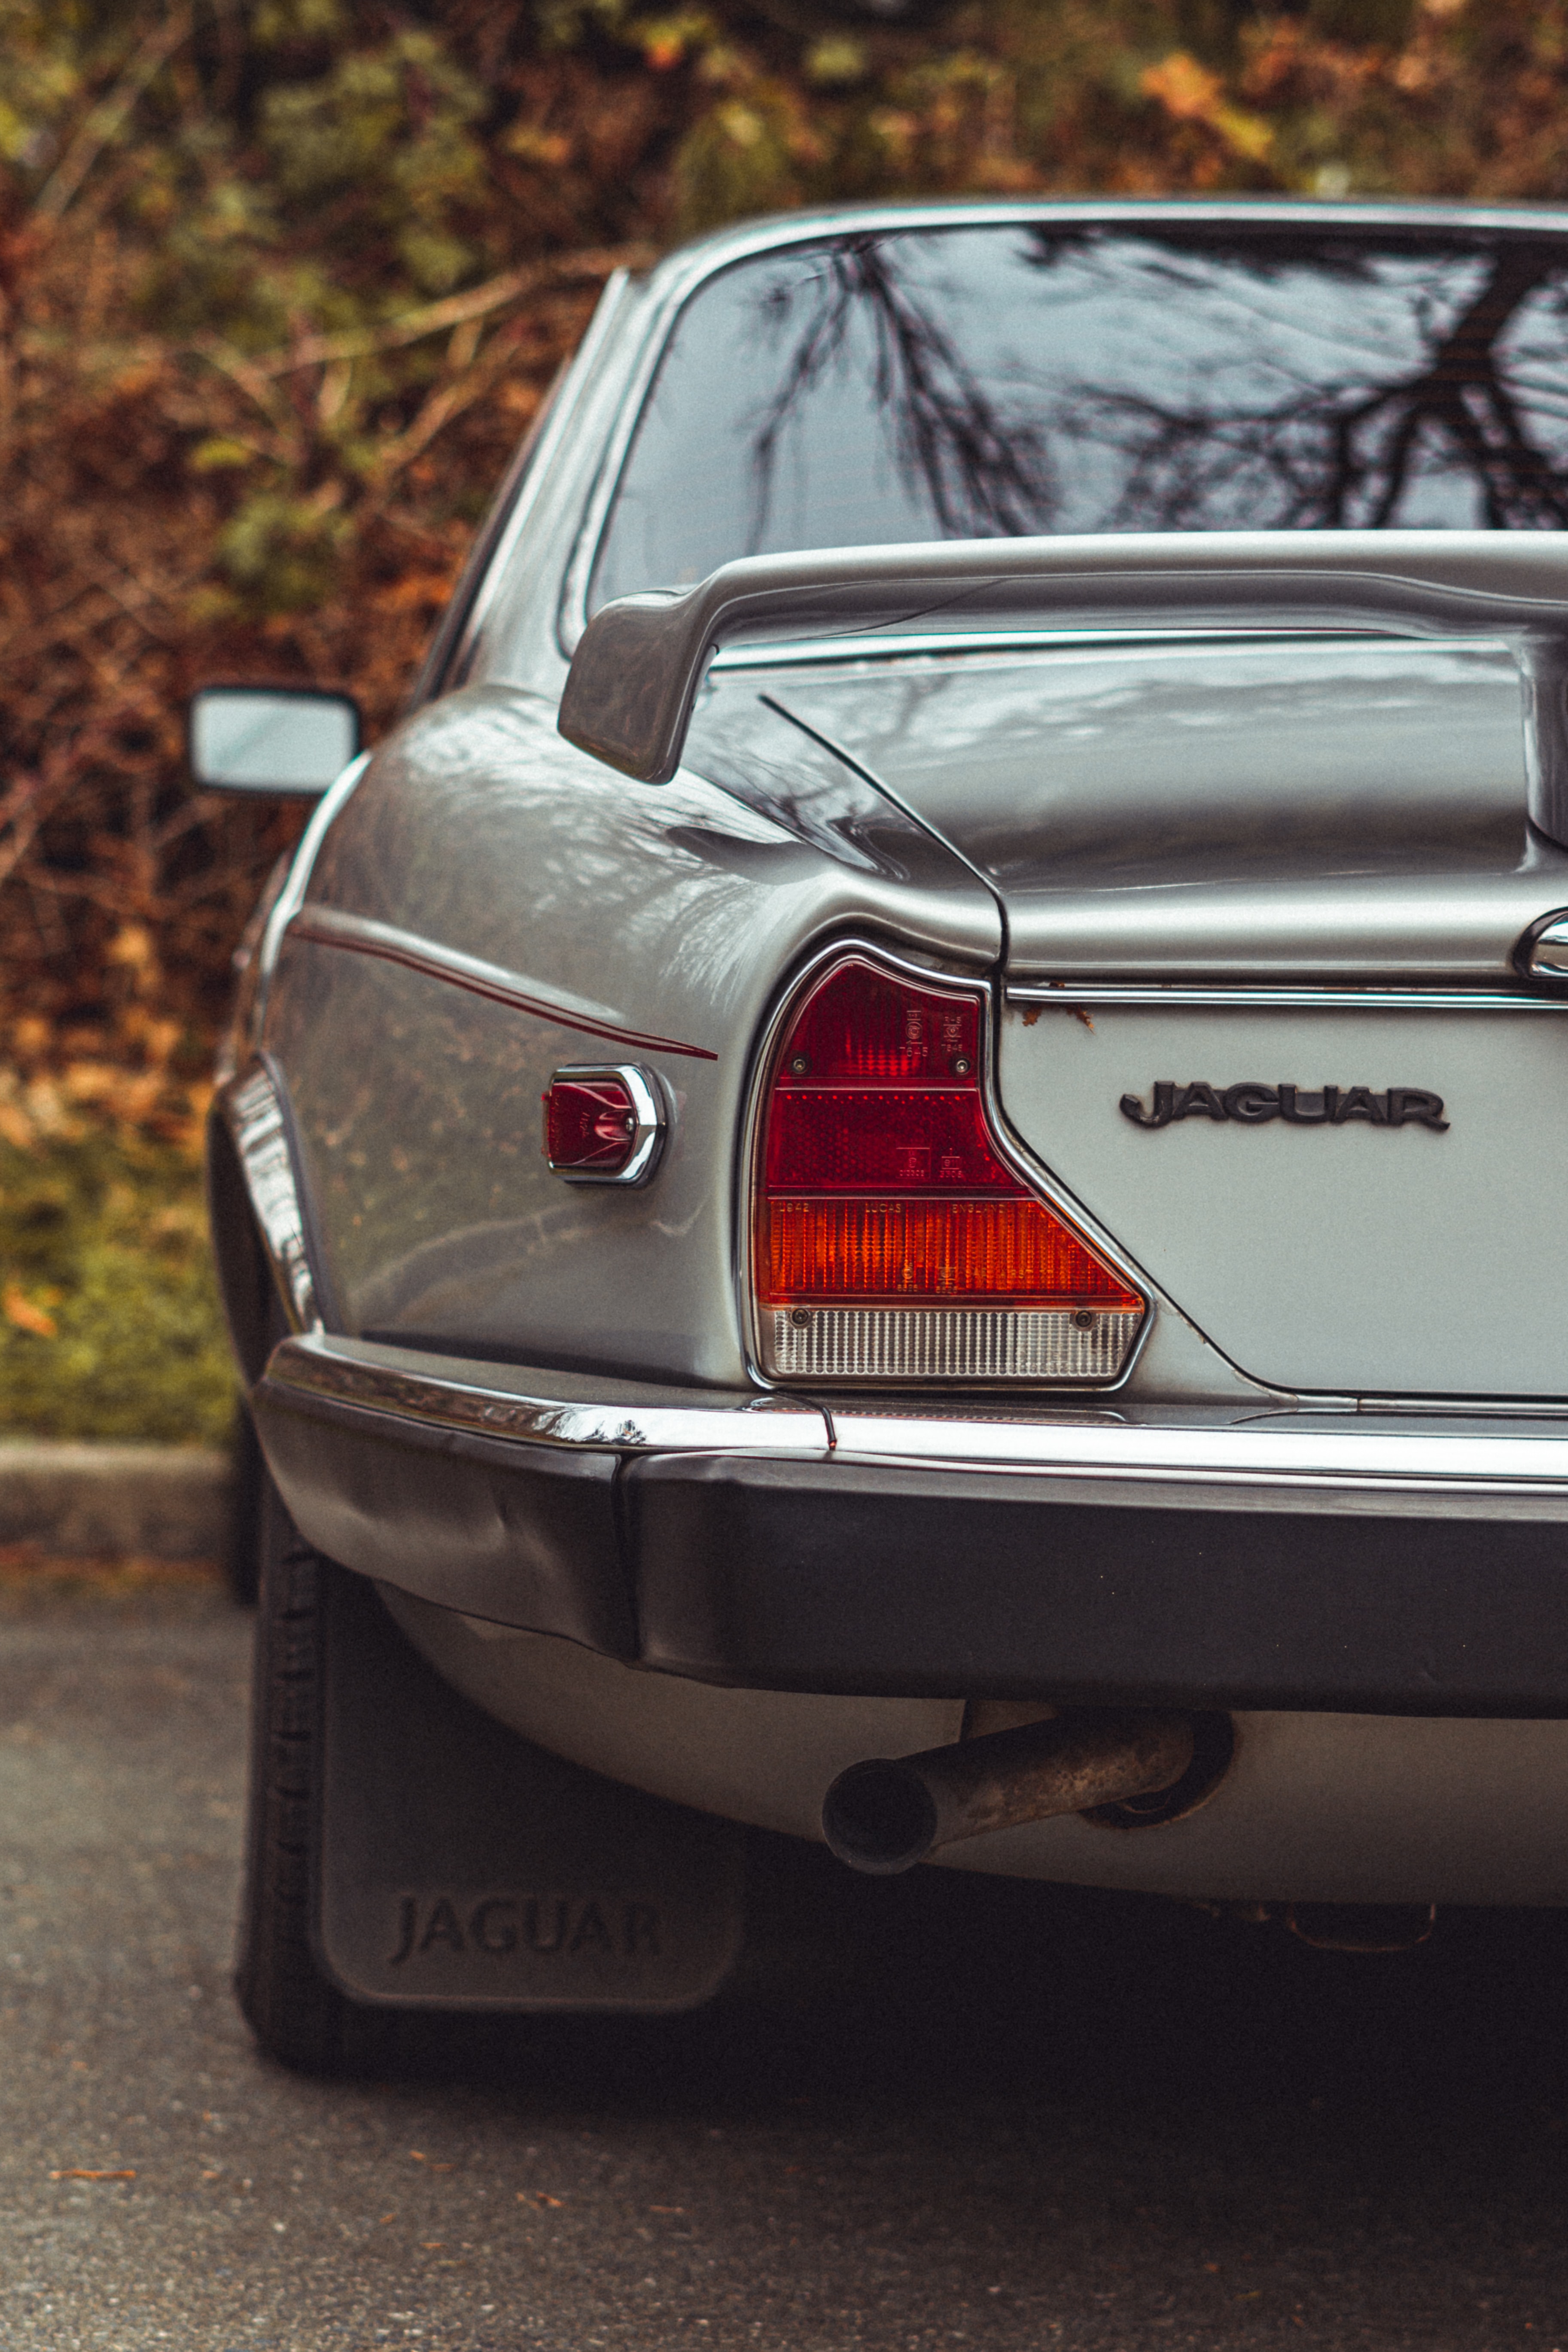 jaguar, cars, car, machine, vintage, back view, rear view, retro Image for desktop